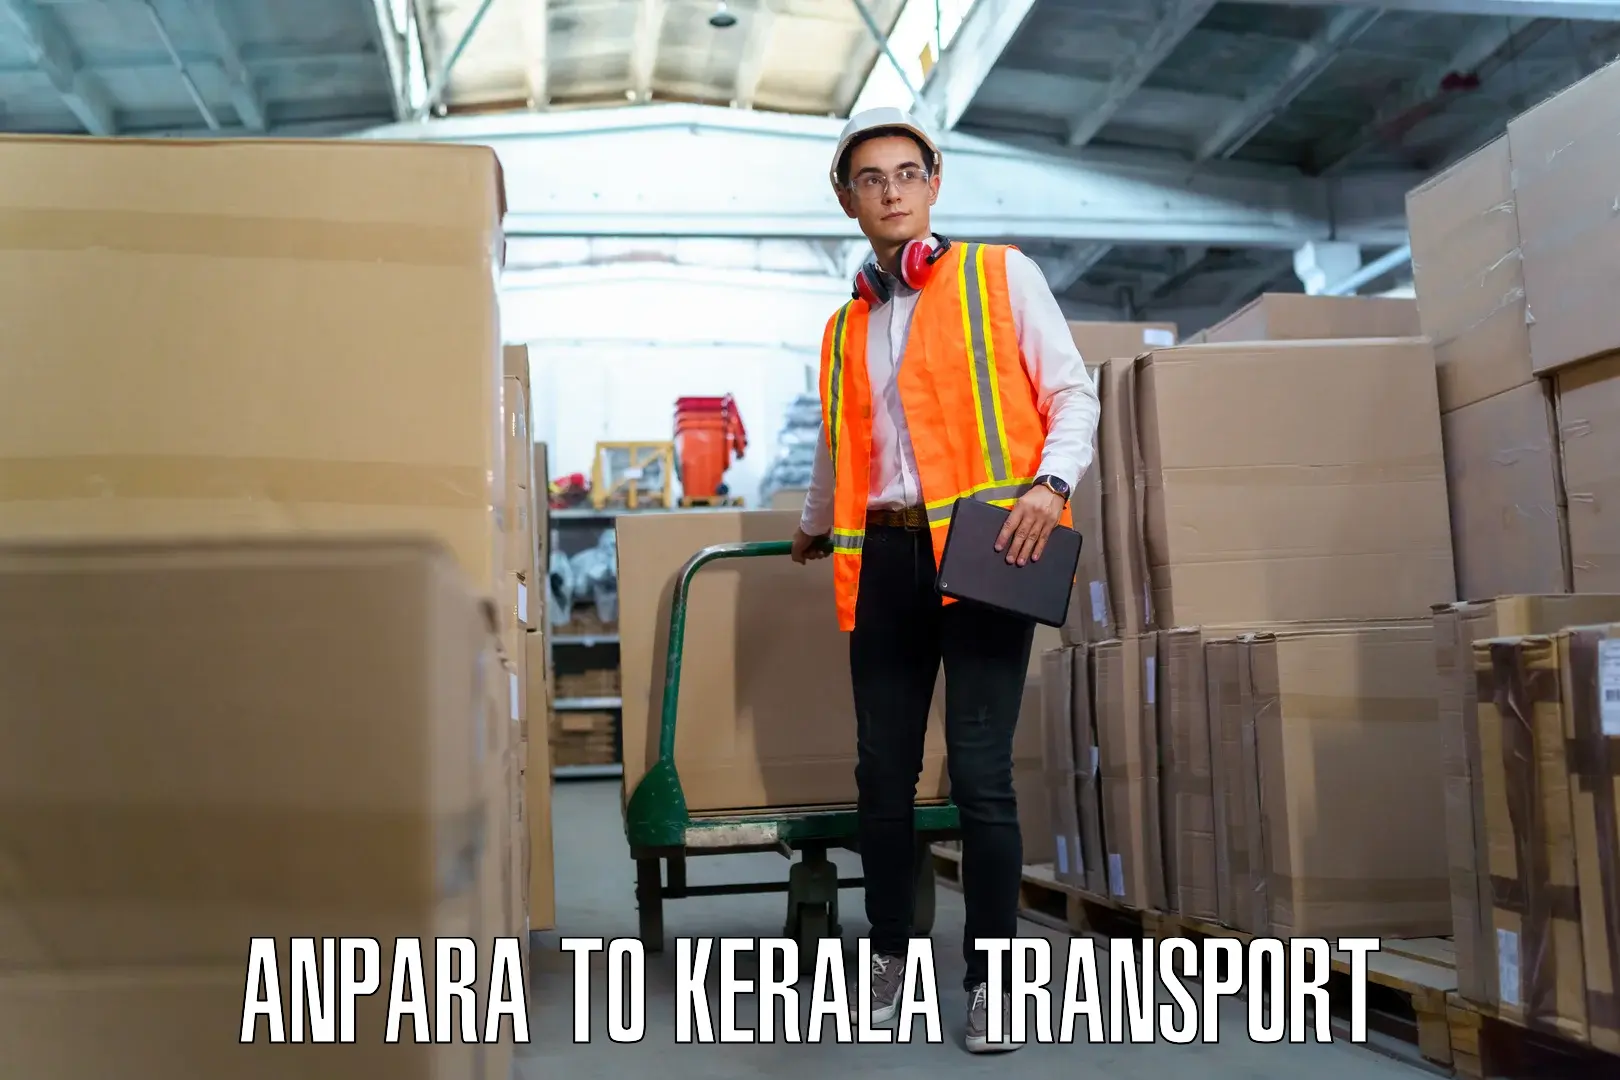 Furniture transport service Anpara to Akaloor